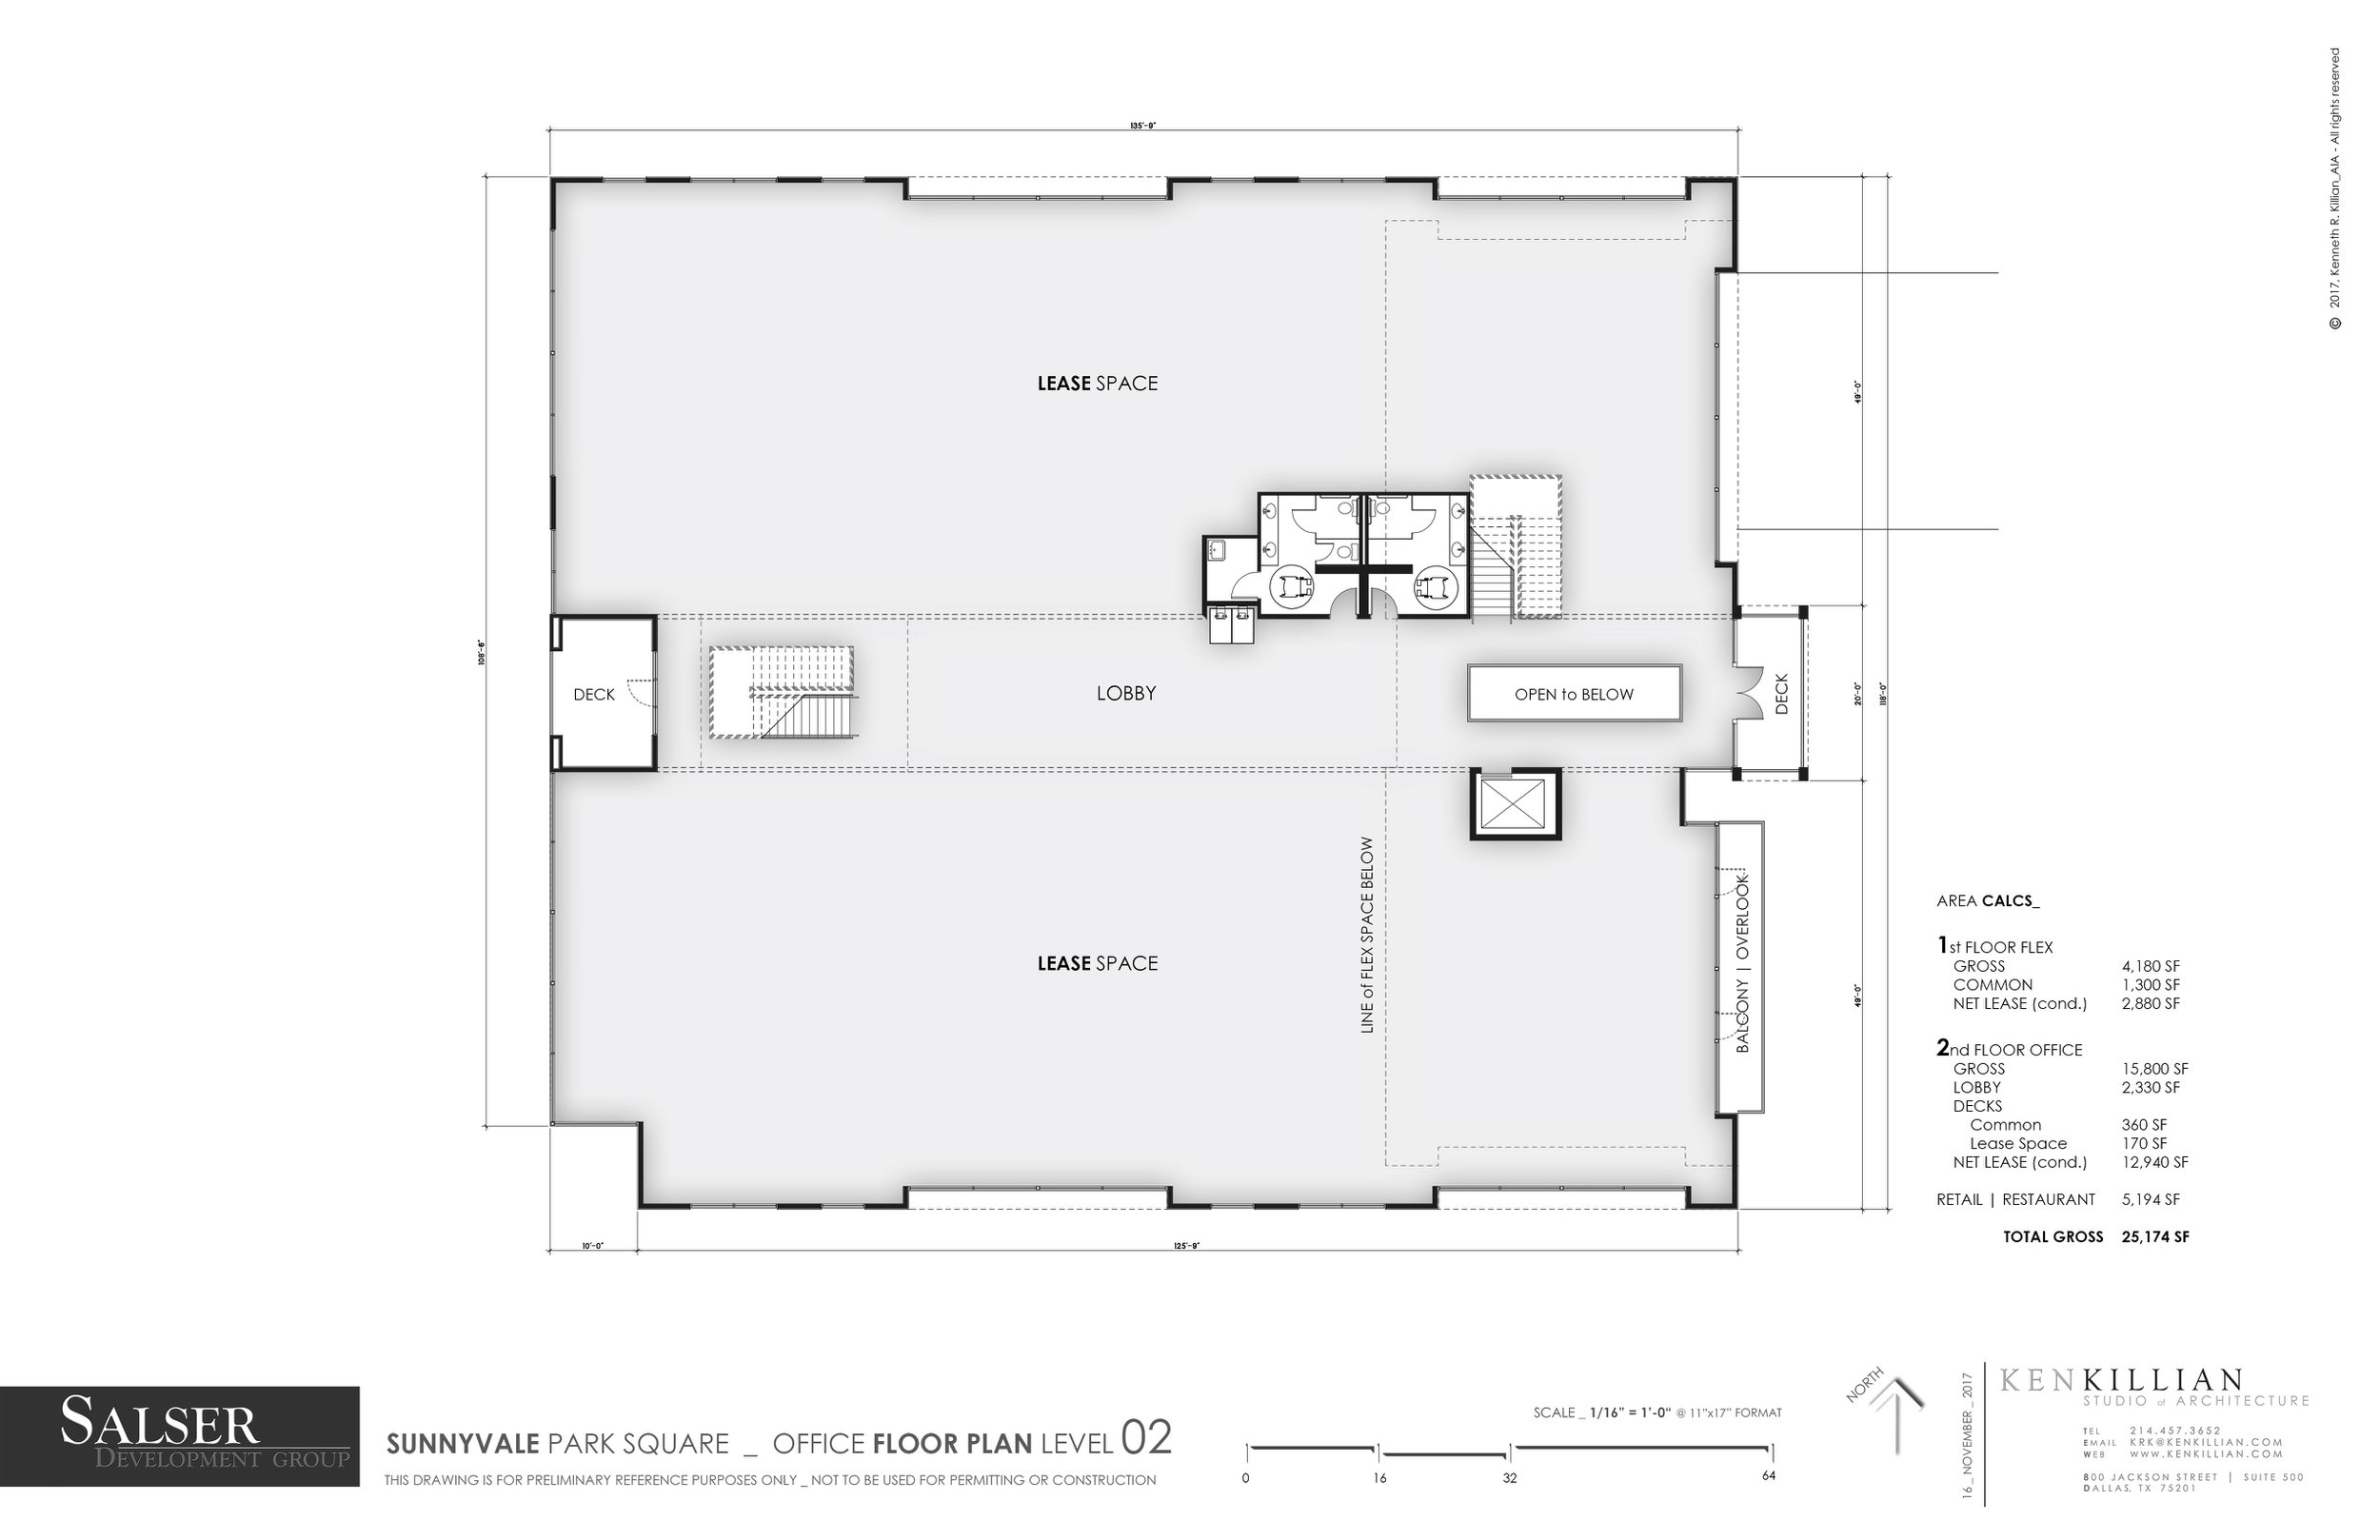 2017_11-16 SUNNYVALE - Office Floor Plan Level 02.jpg